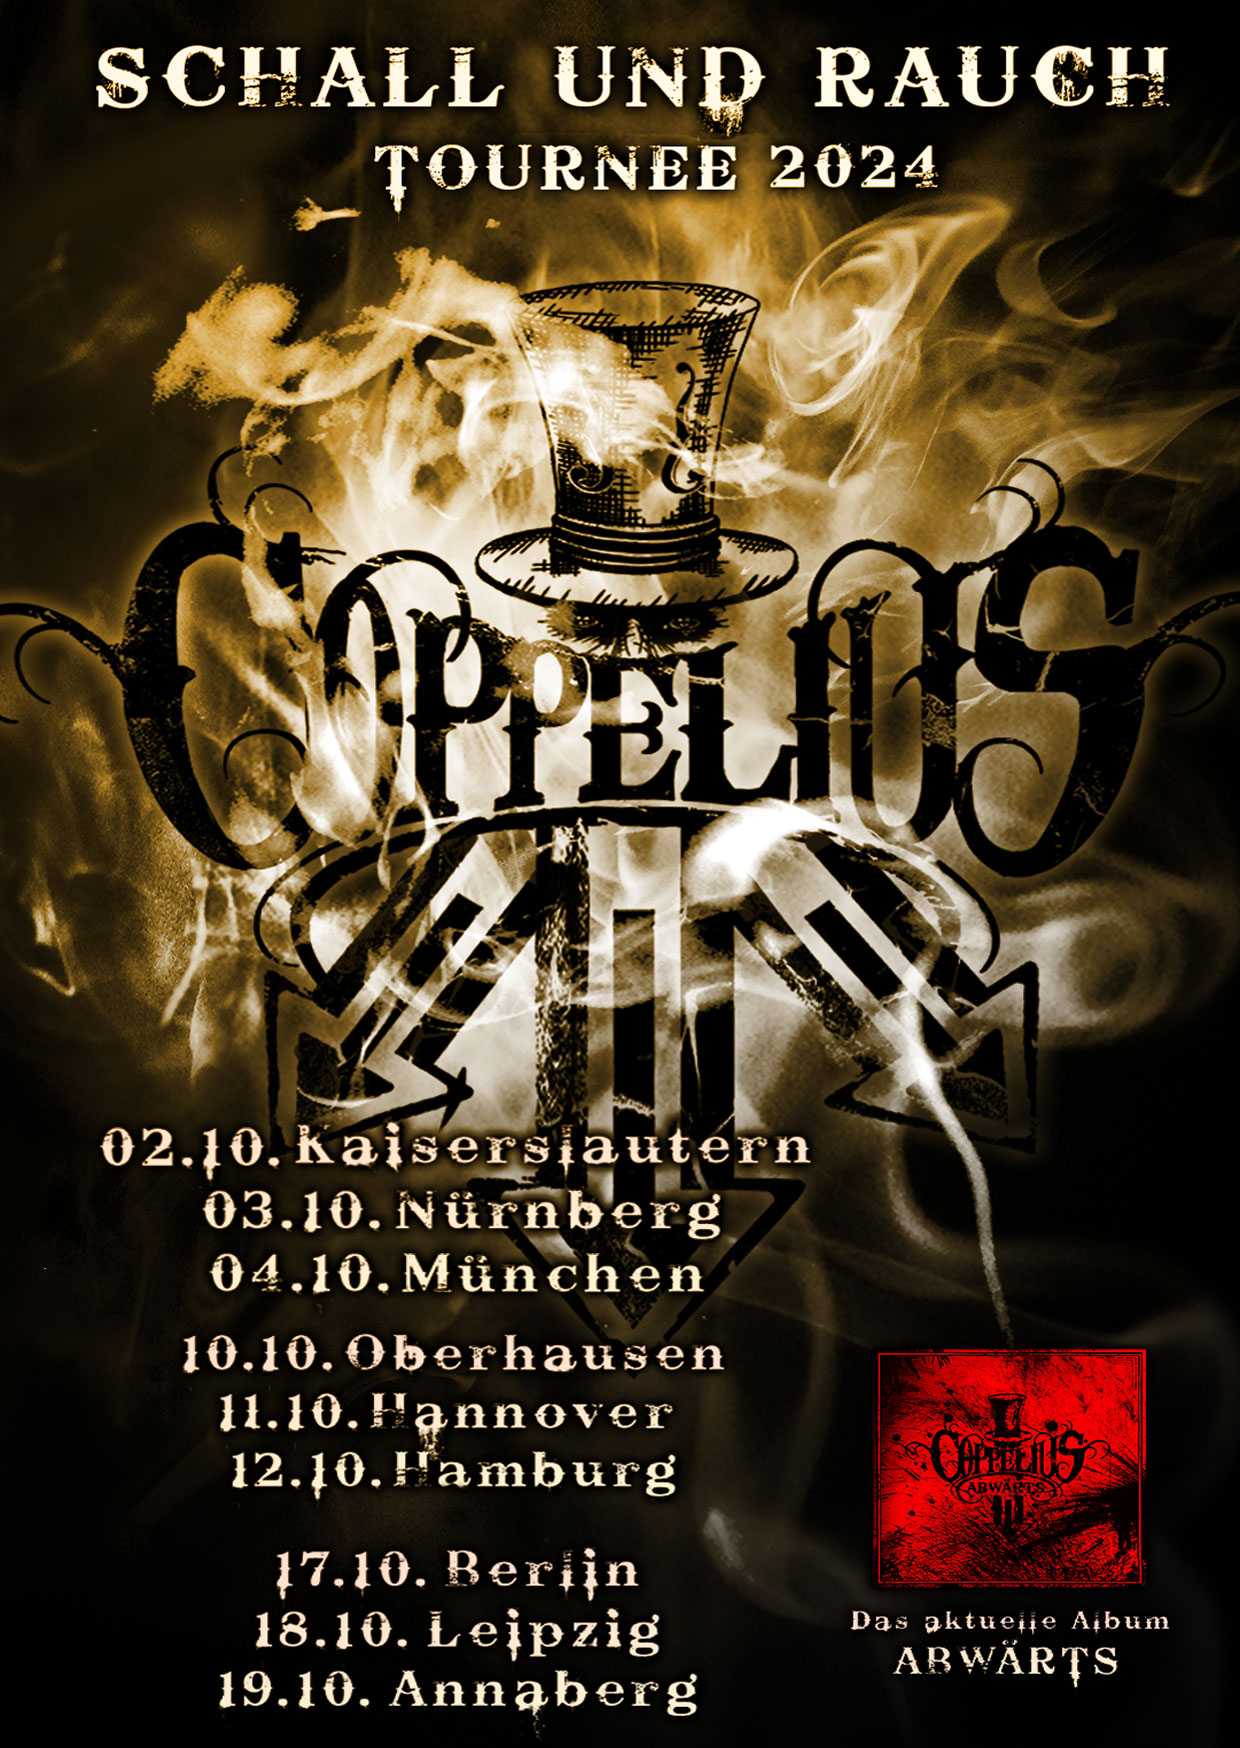 Billets Coppelius - Schall Rauch Tournee 2024 (MusikZentrum Hannover - Hannovre)